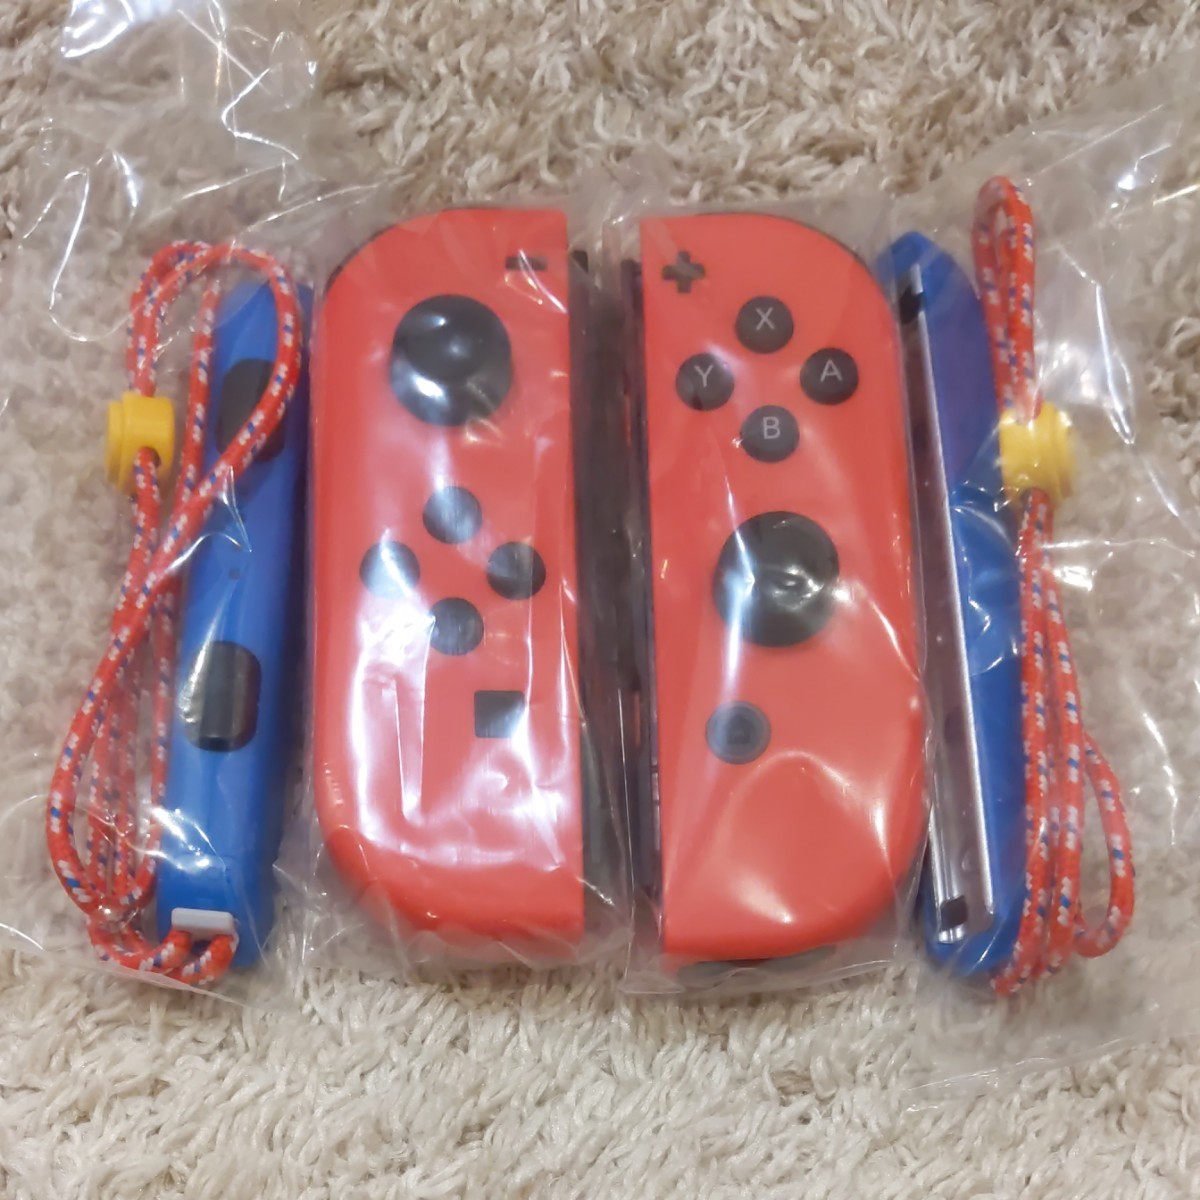  保証あり　新品未使用 Nintendo Switch マリオレッド×ブルー Joy-Con &ジョイコン 任天堂 スイッチ